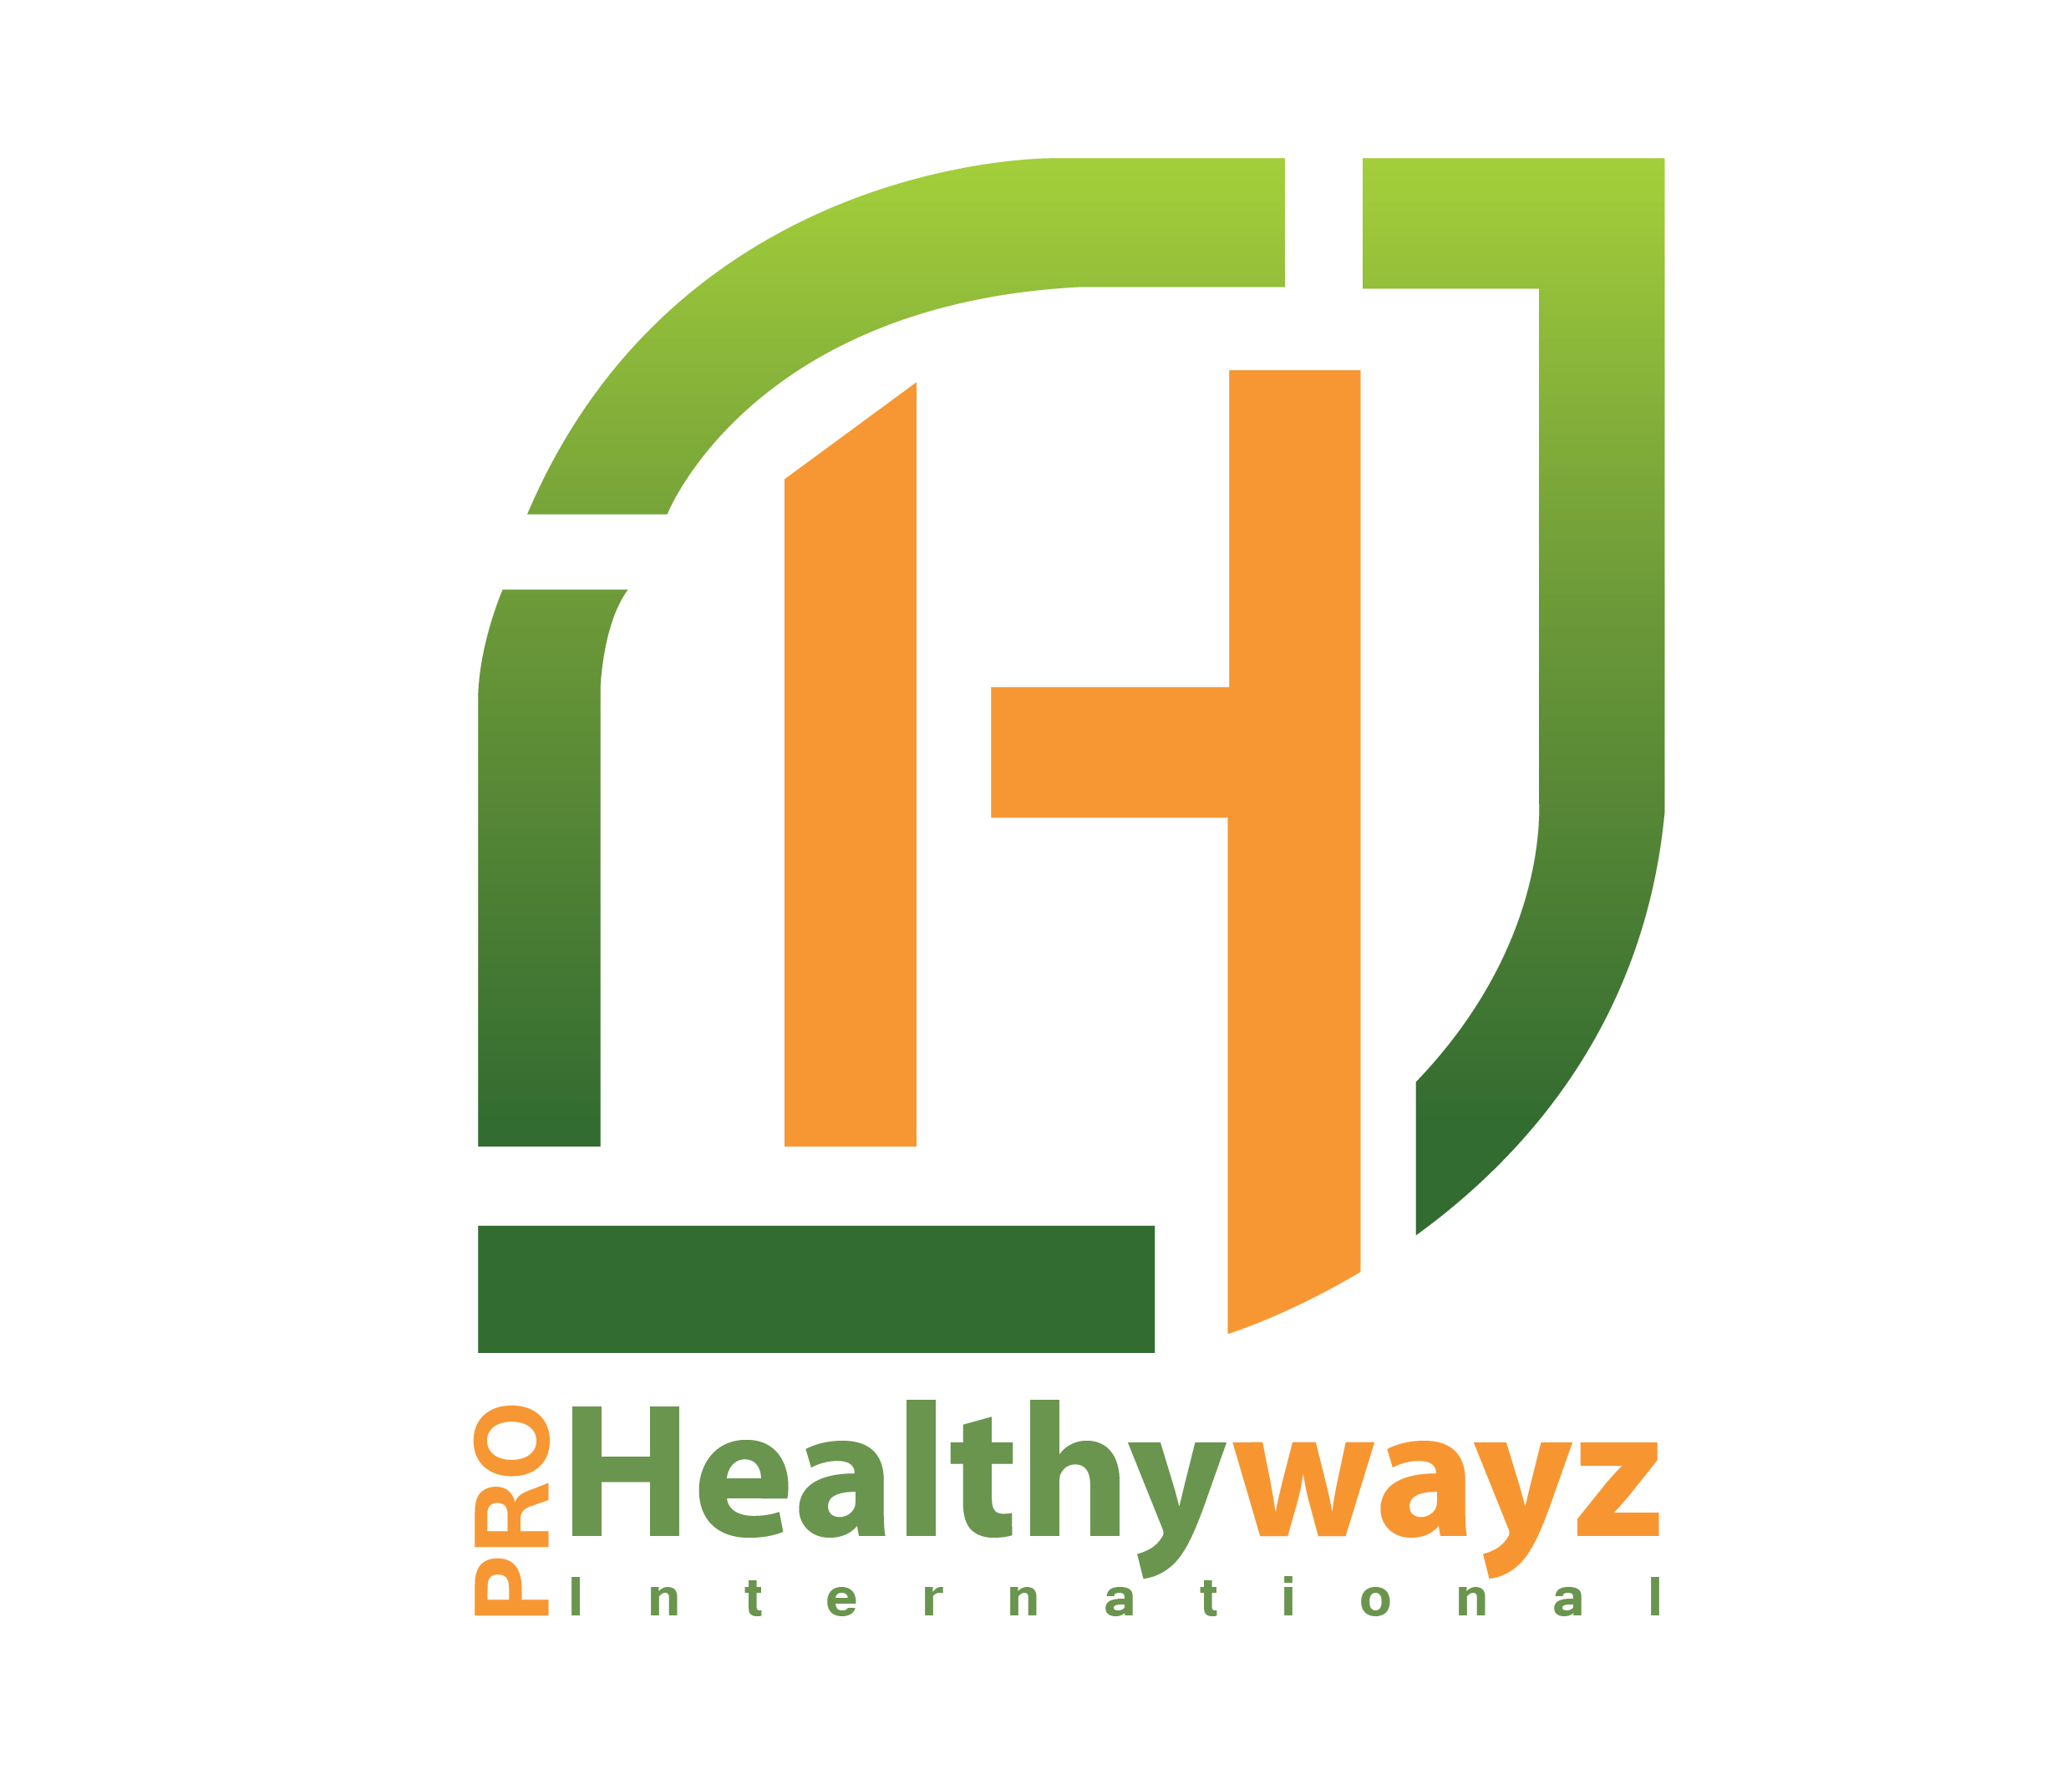 Healthwayz International